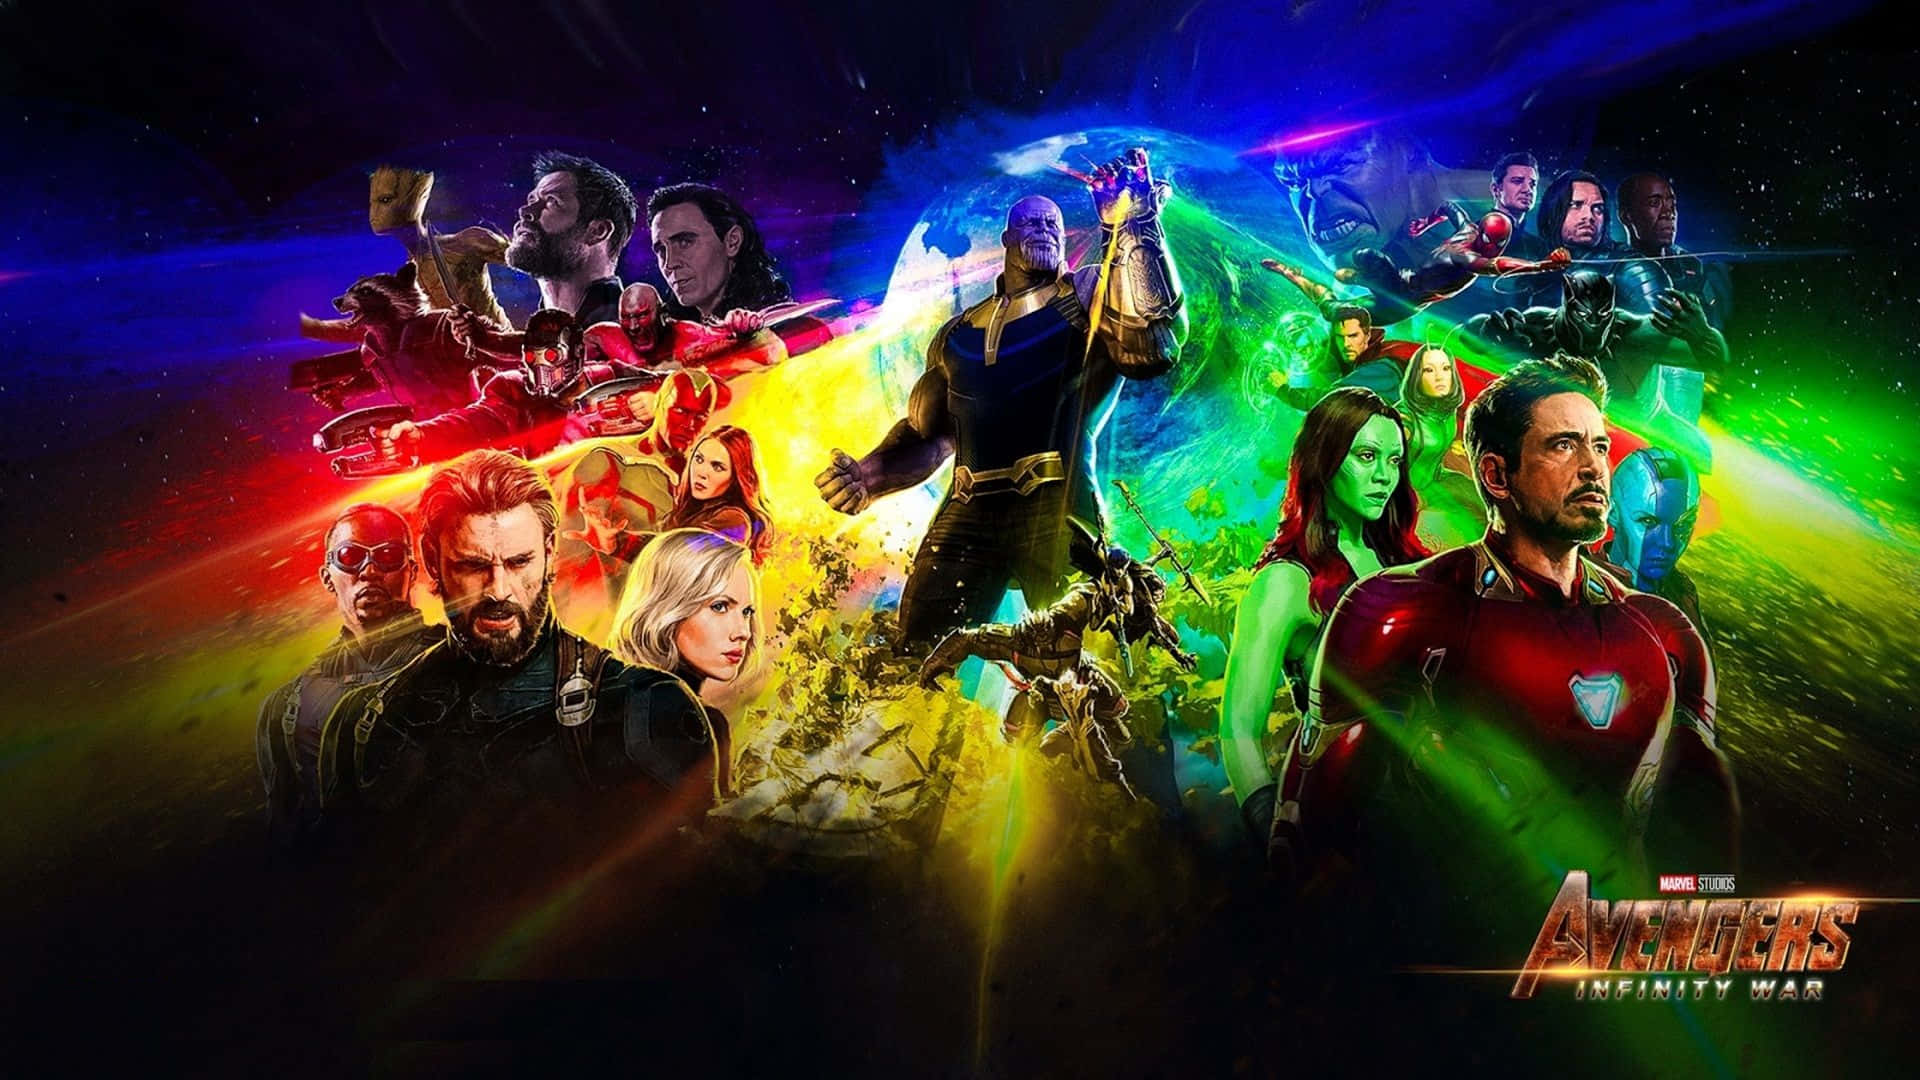 Losvengadores Se Unen En Avengers Infinity War.